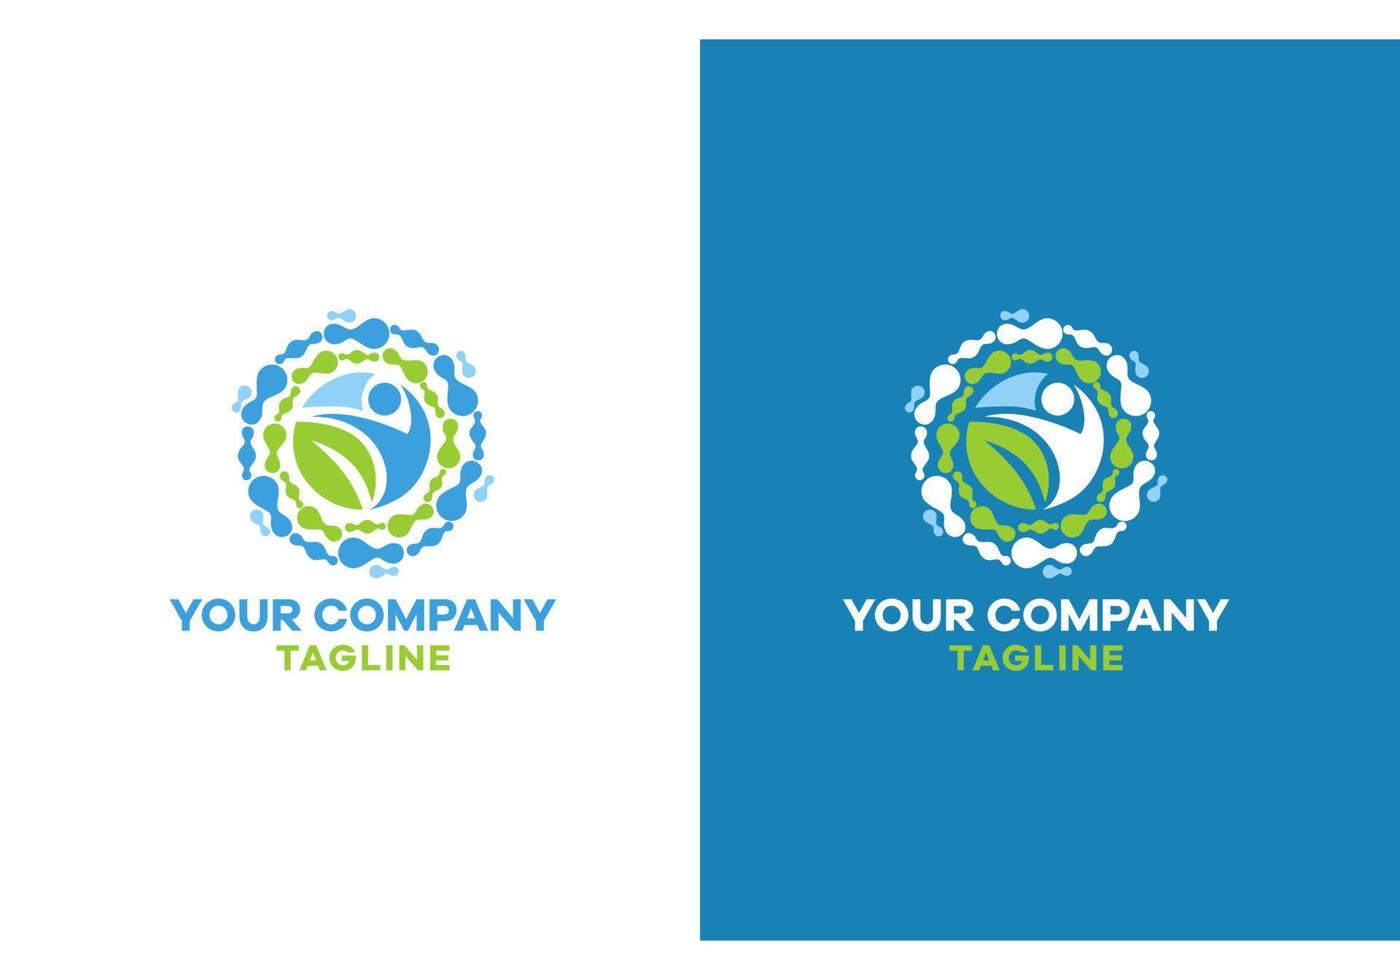 rundformad logotyp för en företag i de fält av sjukvård och medicin vektor